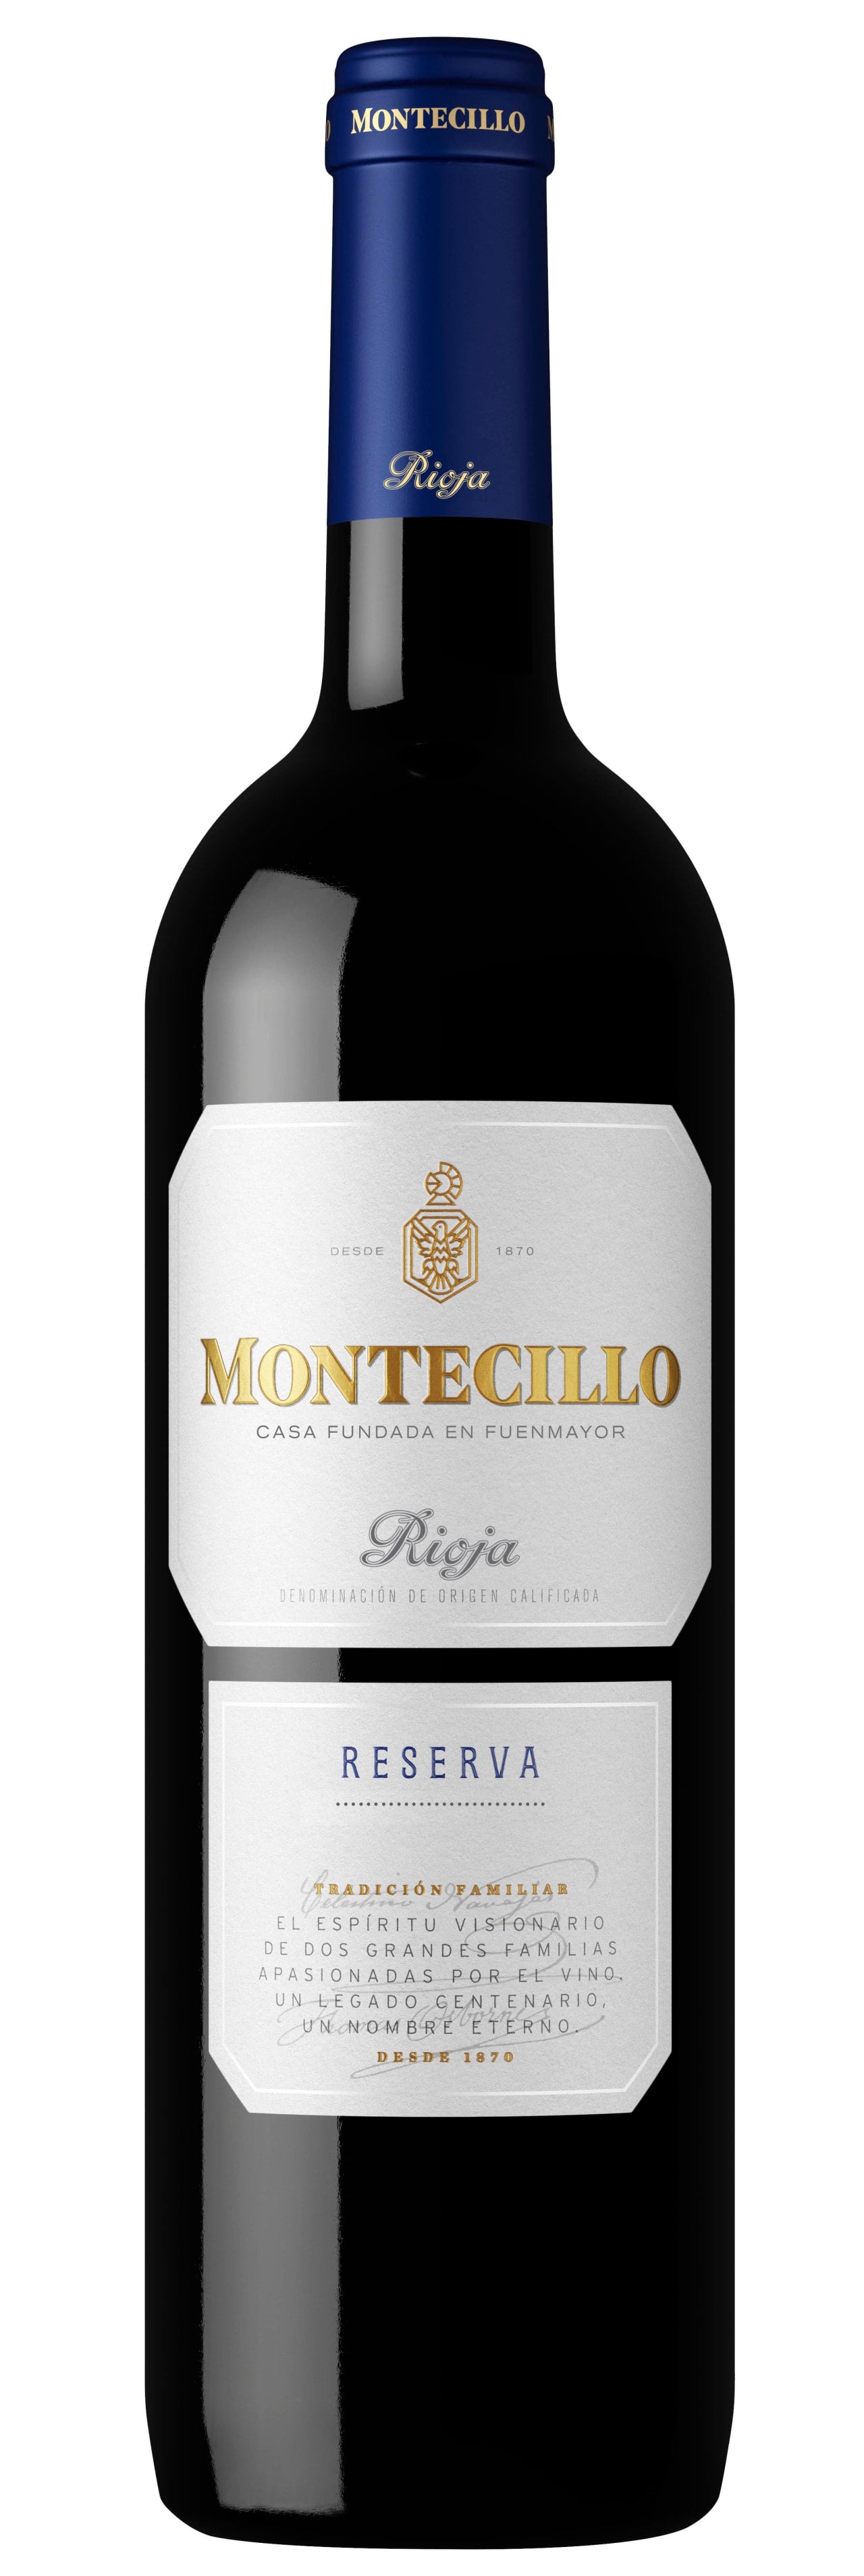 Montecillo Rioja Reserva 2013